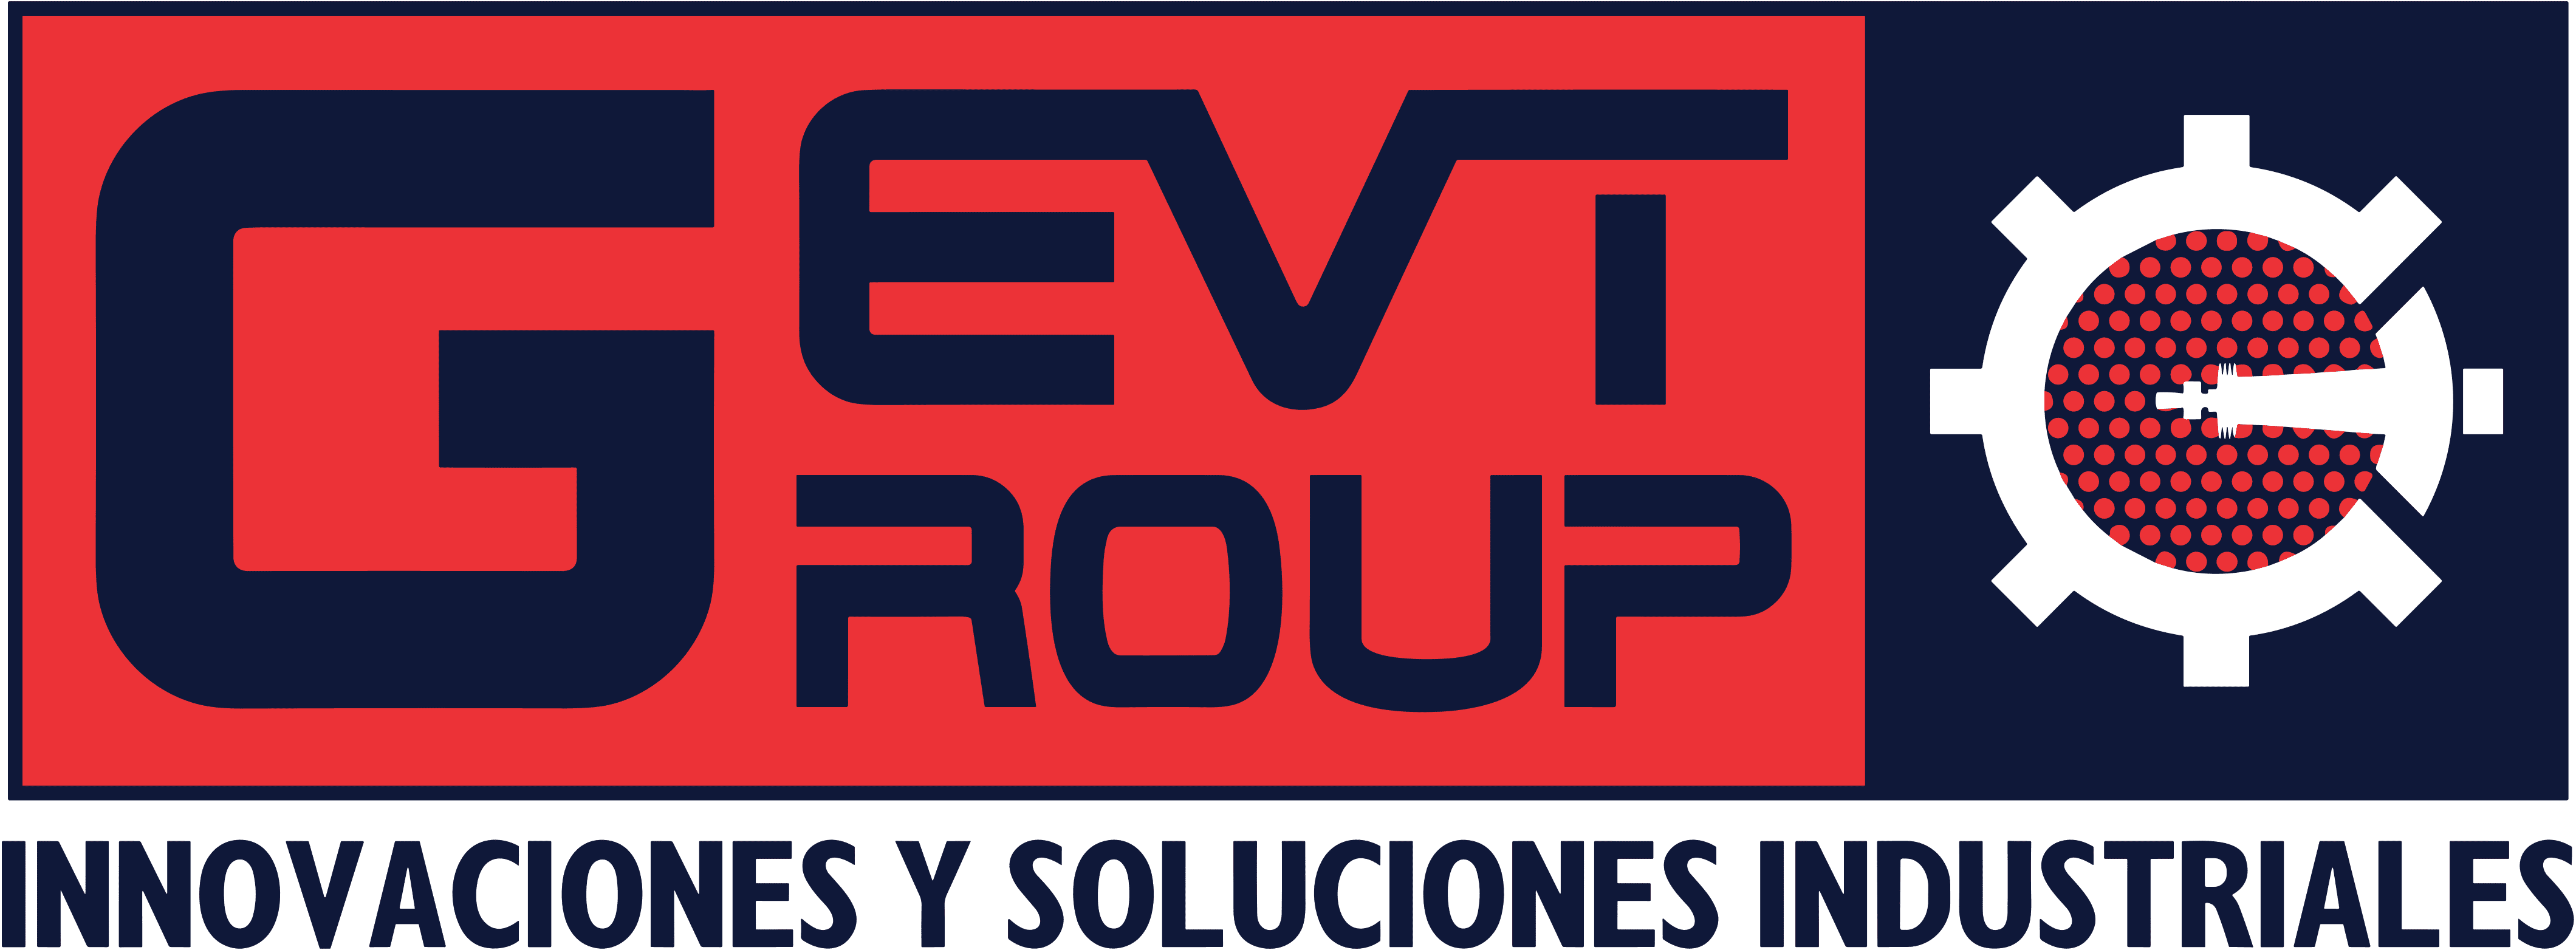 gevt group logo